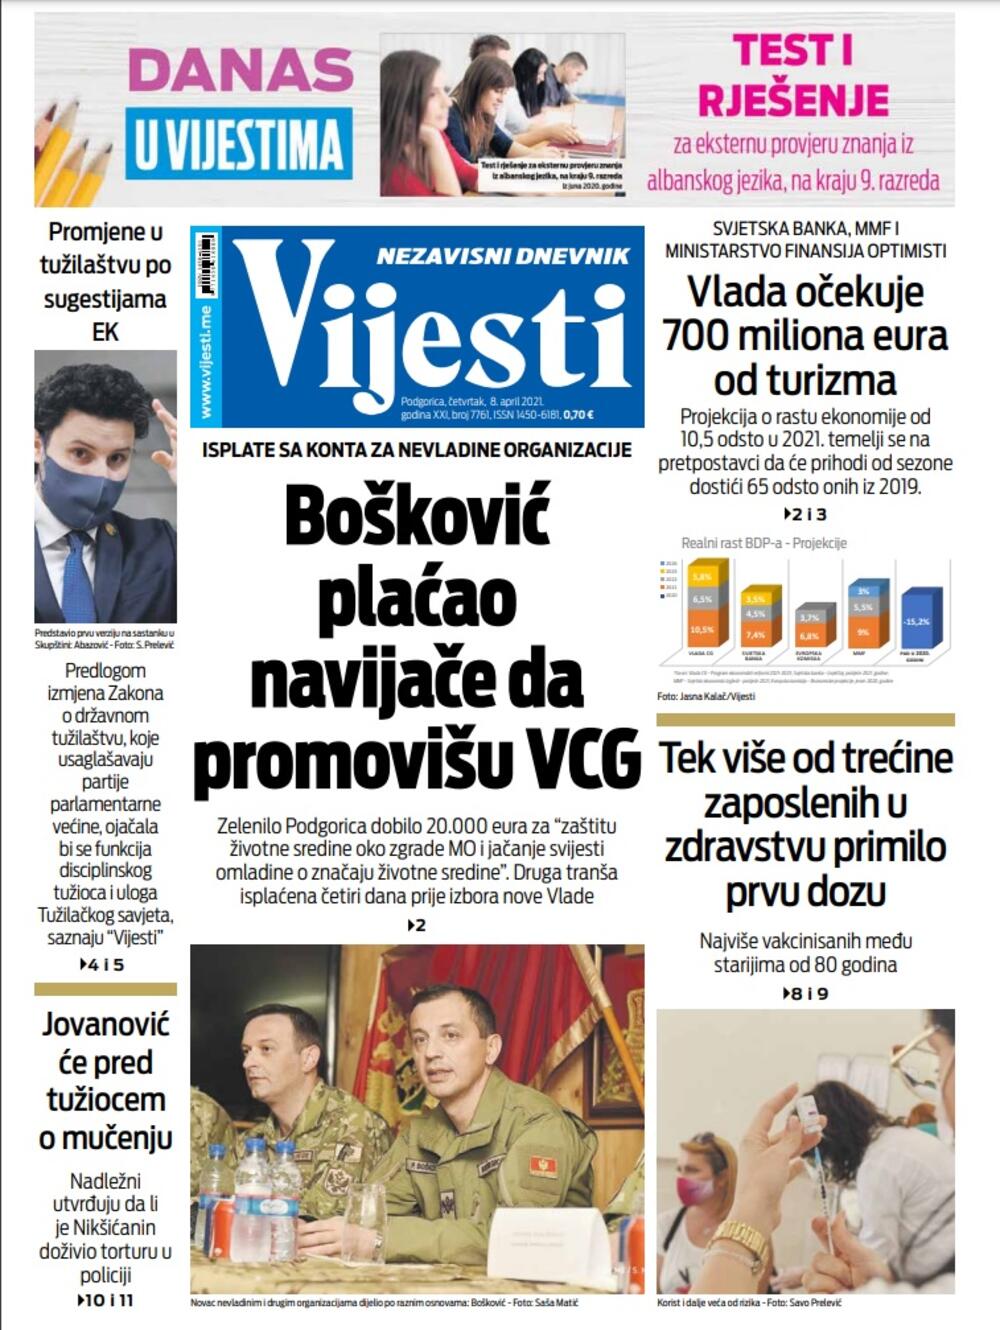 Naslovna strana "Vijesti" za 8. april 2021., Foto: Vijesti